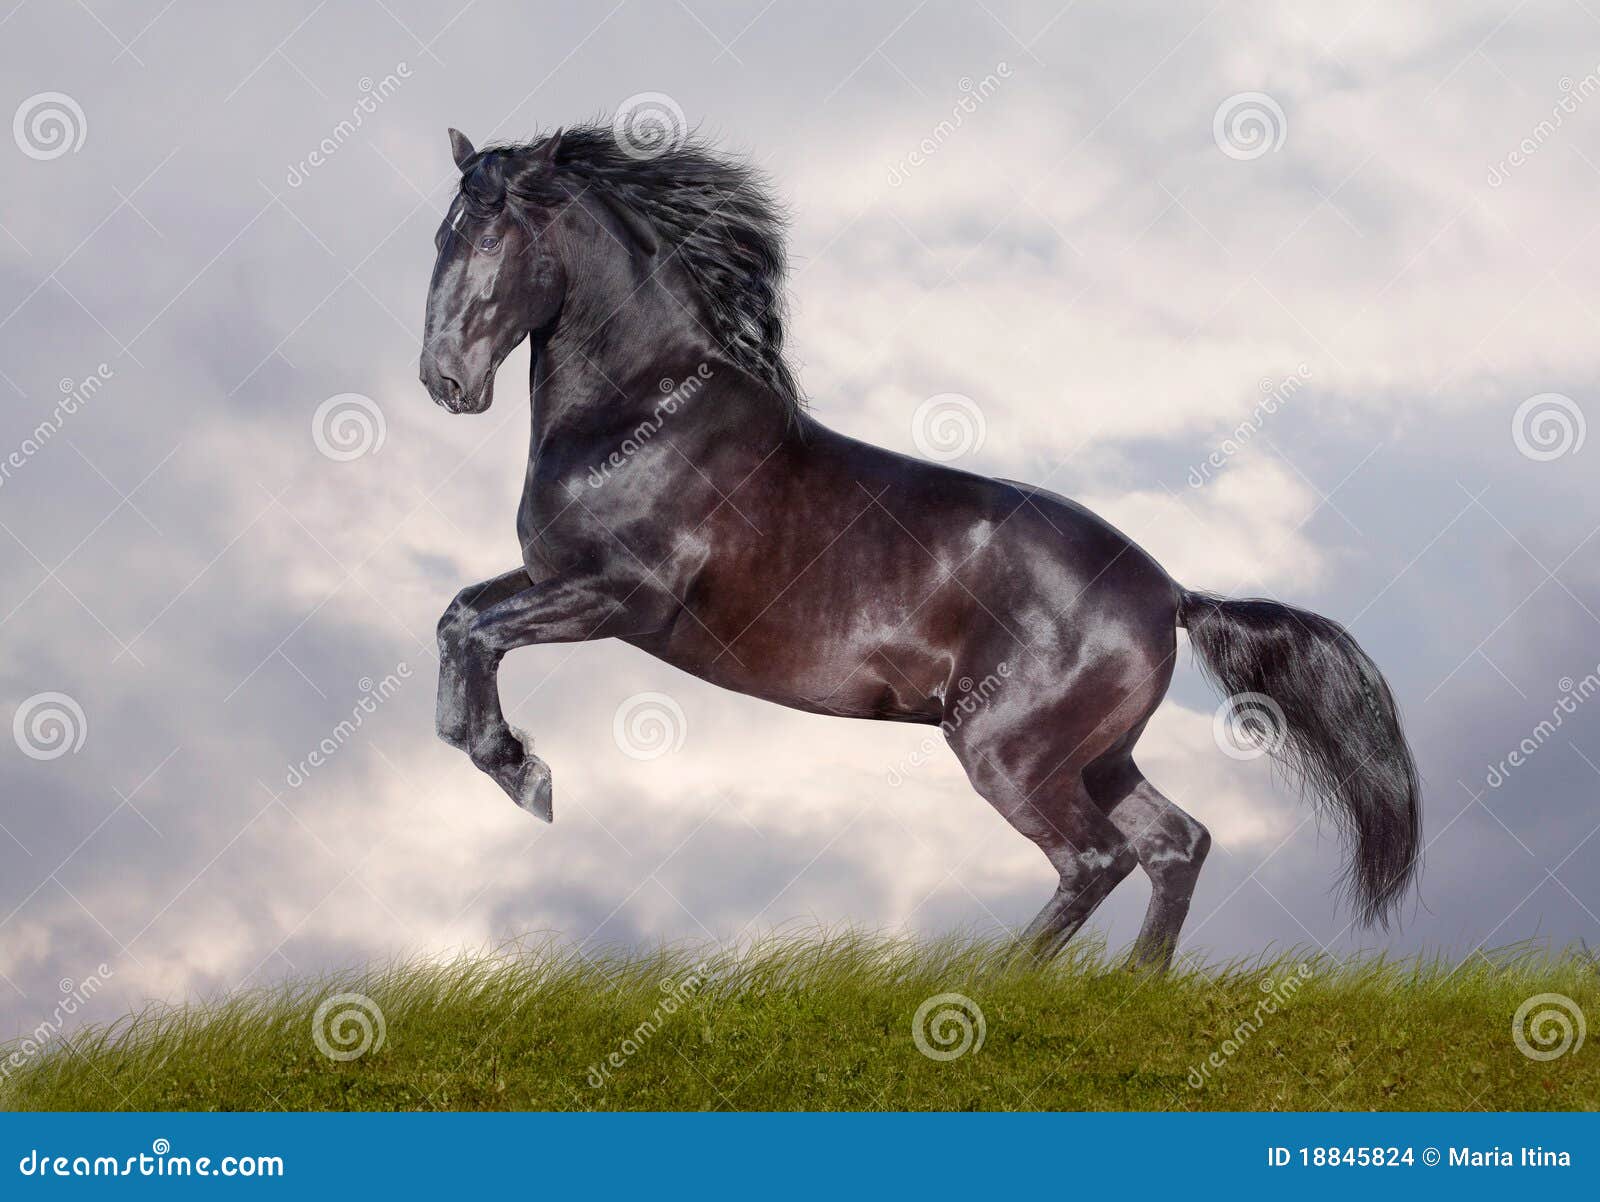 Black stallion on stormy background